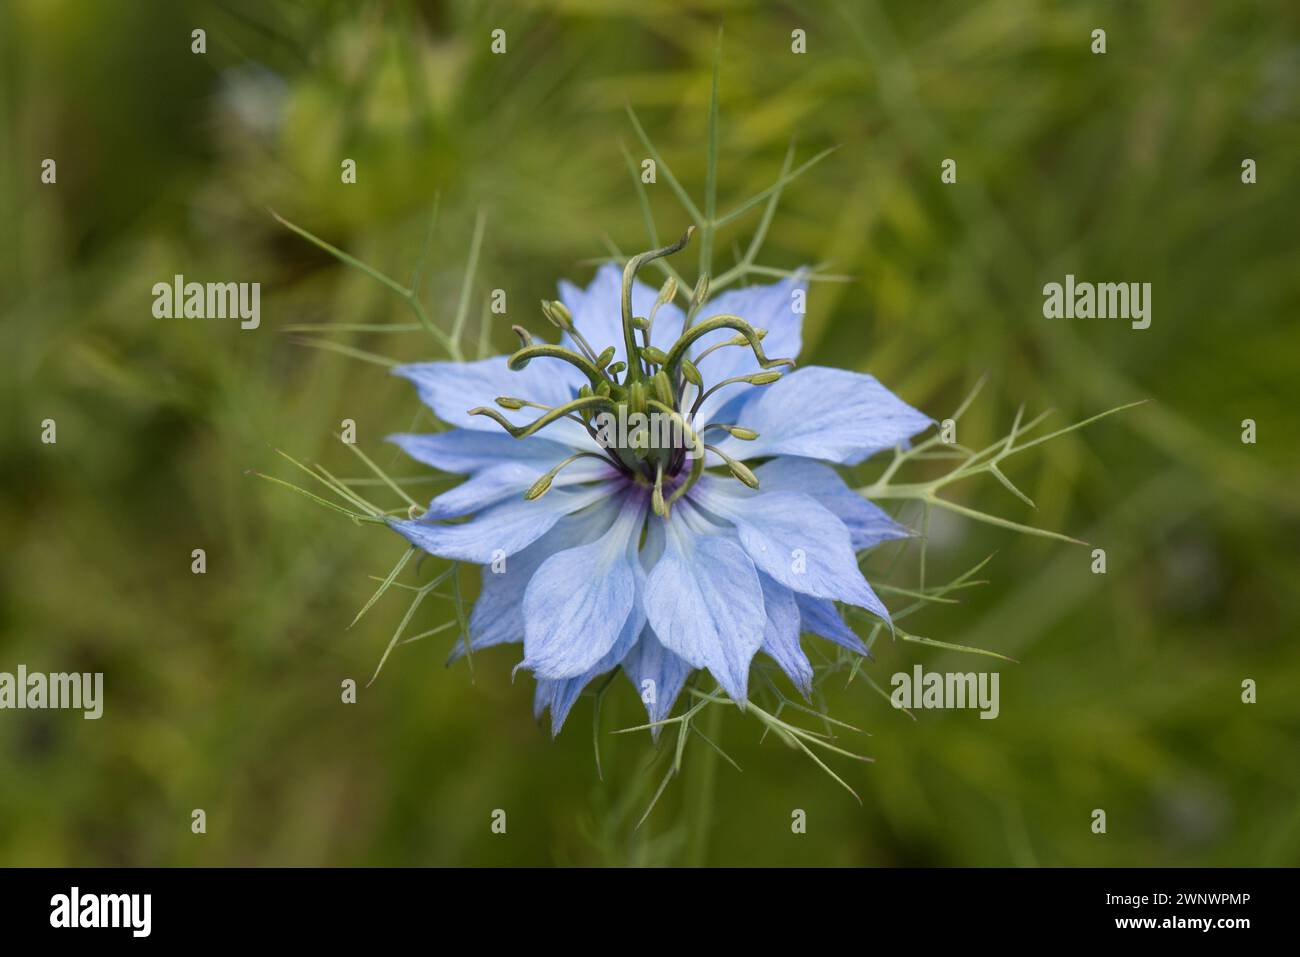 Amore nella nebbia (Nigella damascena) fiore sepali e petali azzurri pallidi alla base delle Anthers, pistola con cinque stili e involucro multidisciplinare. Foto Stock